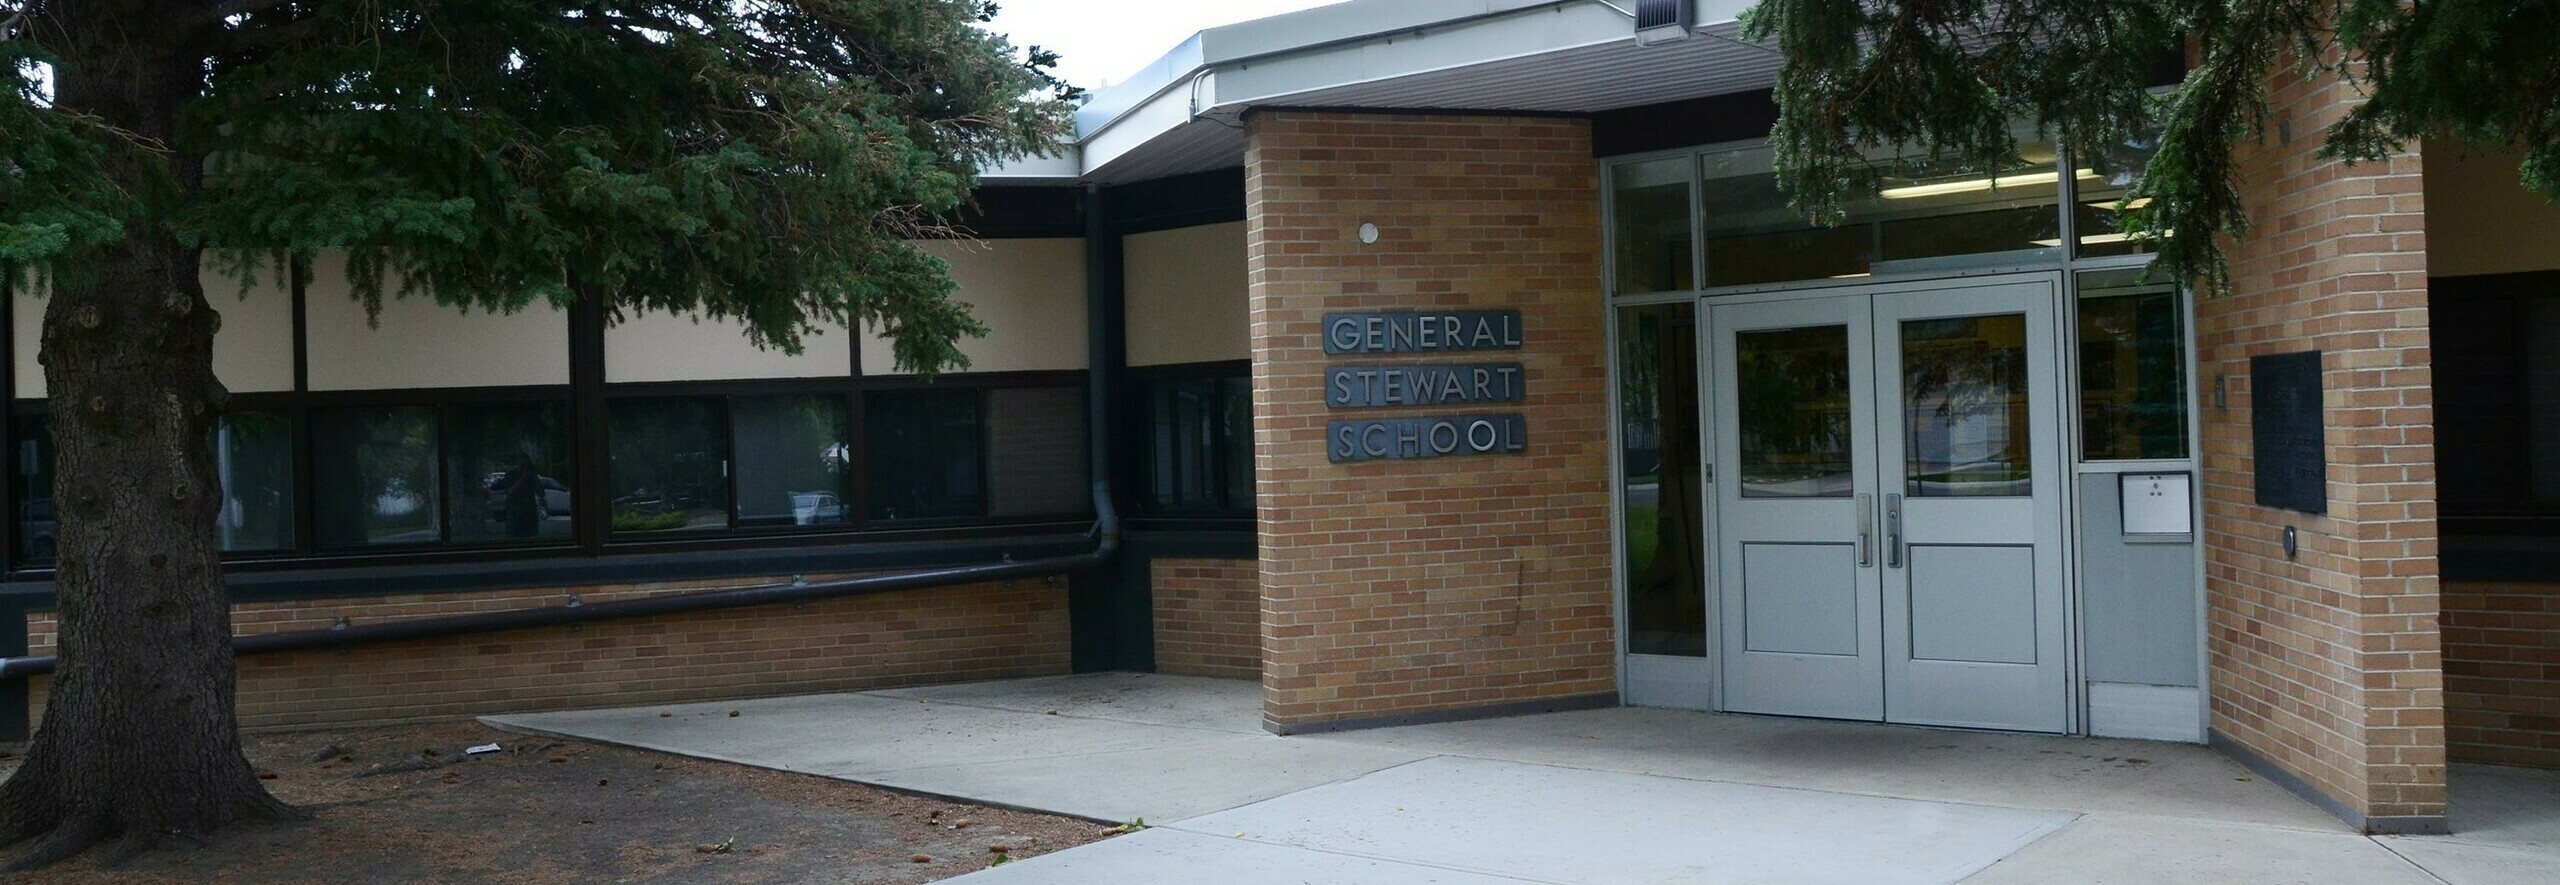 General Stewart Elementary School Banner Photo